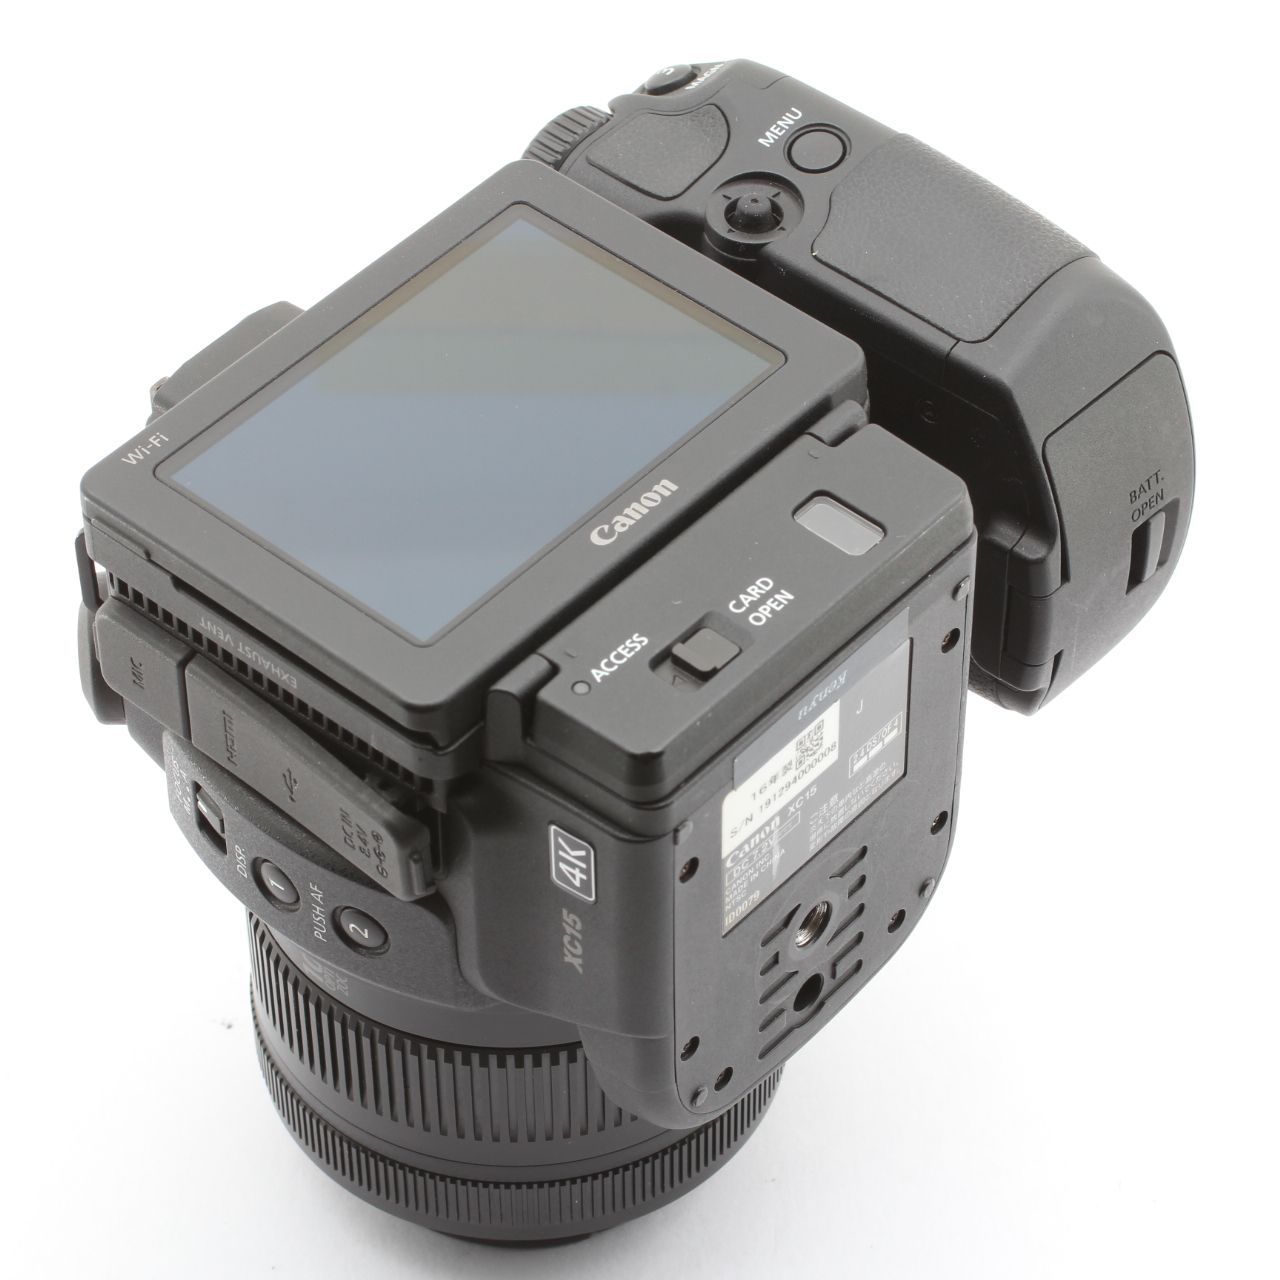 最低価格CANON XC15 4K ビデオカメラ 付属品多数 送料無料 美品 プロ用、業務用